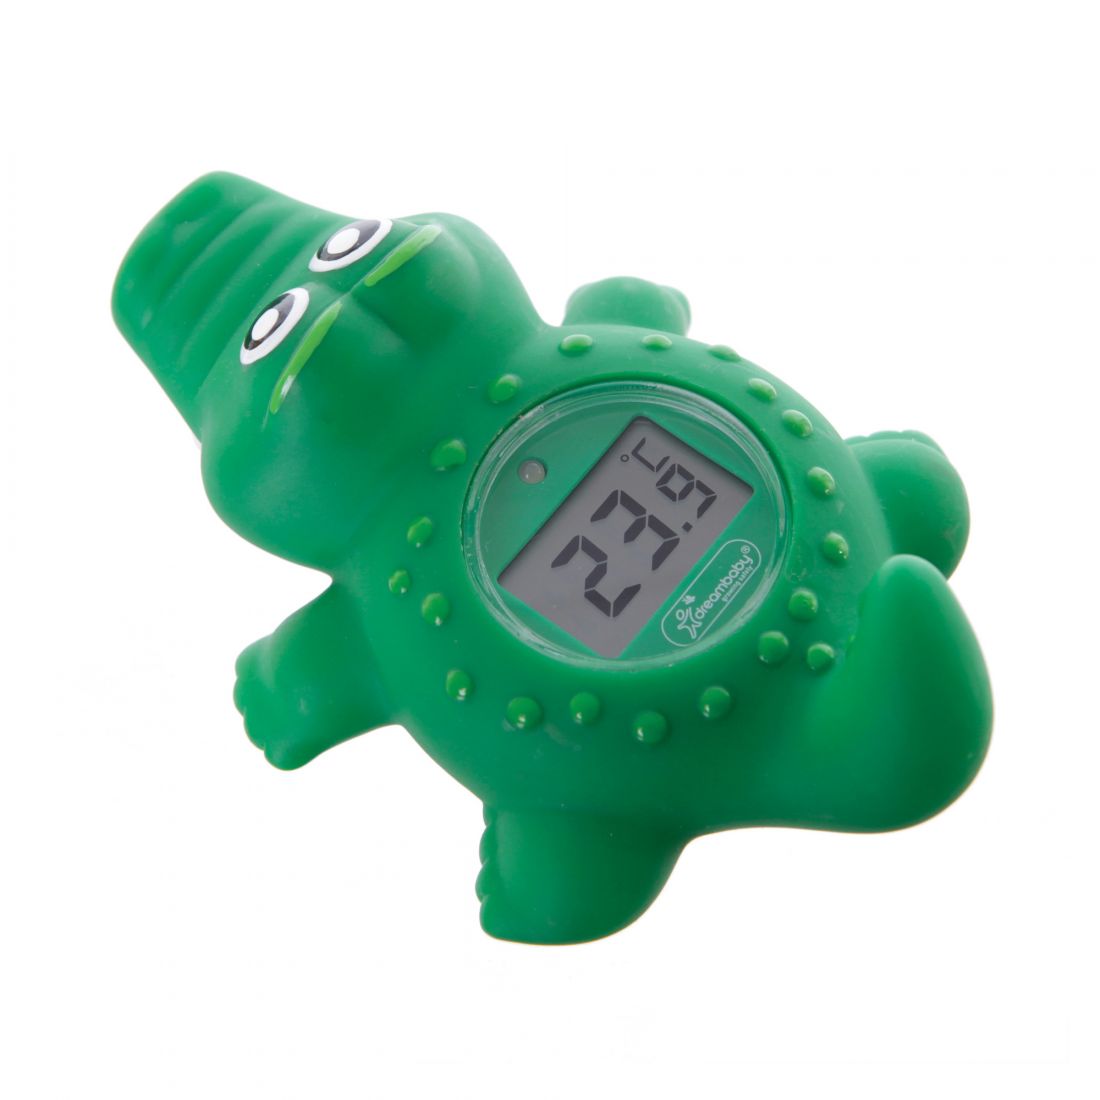 Παιδικό Θερμόμετρο Δωματίου & Μπάνιου Crocodile DreamBaby